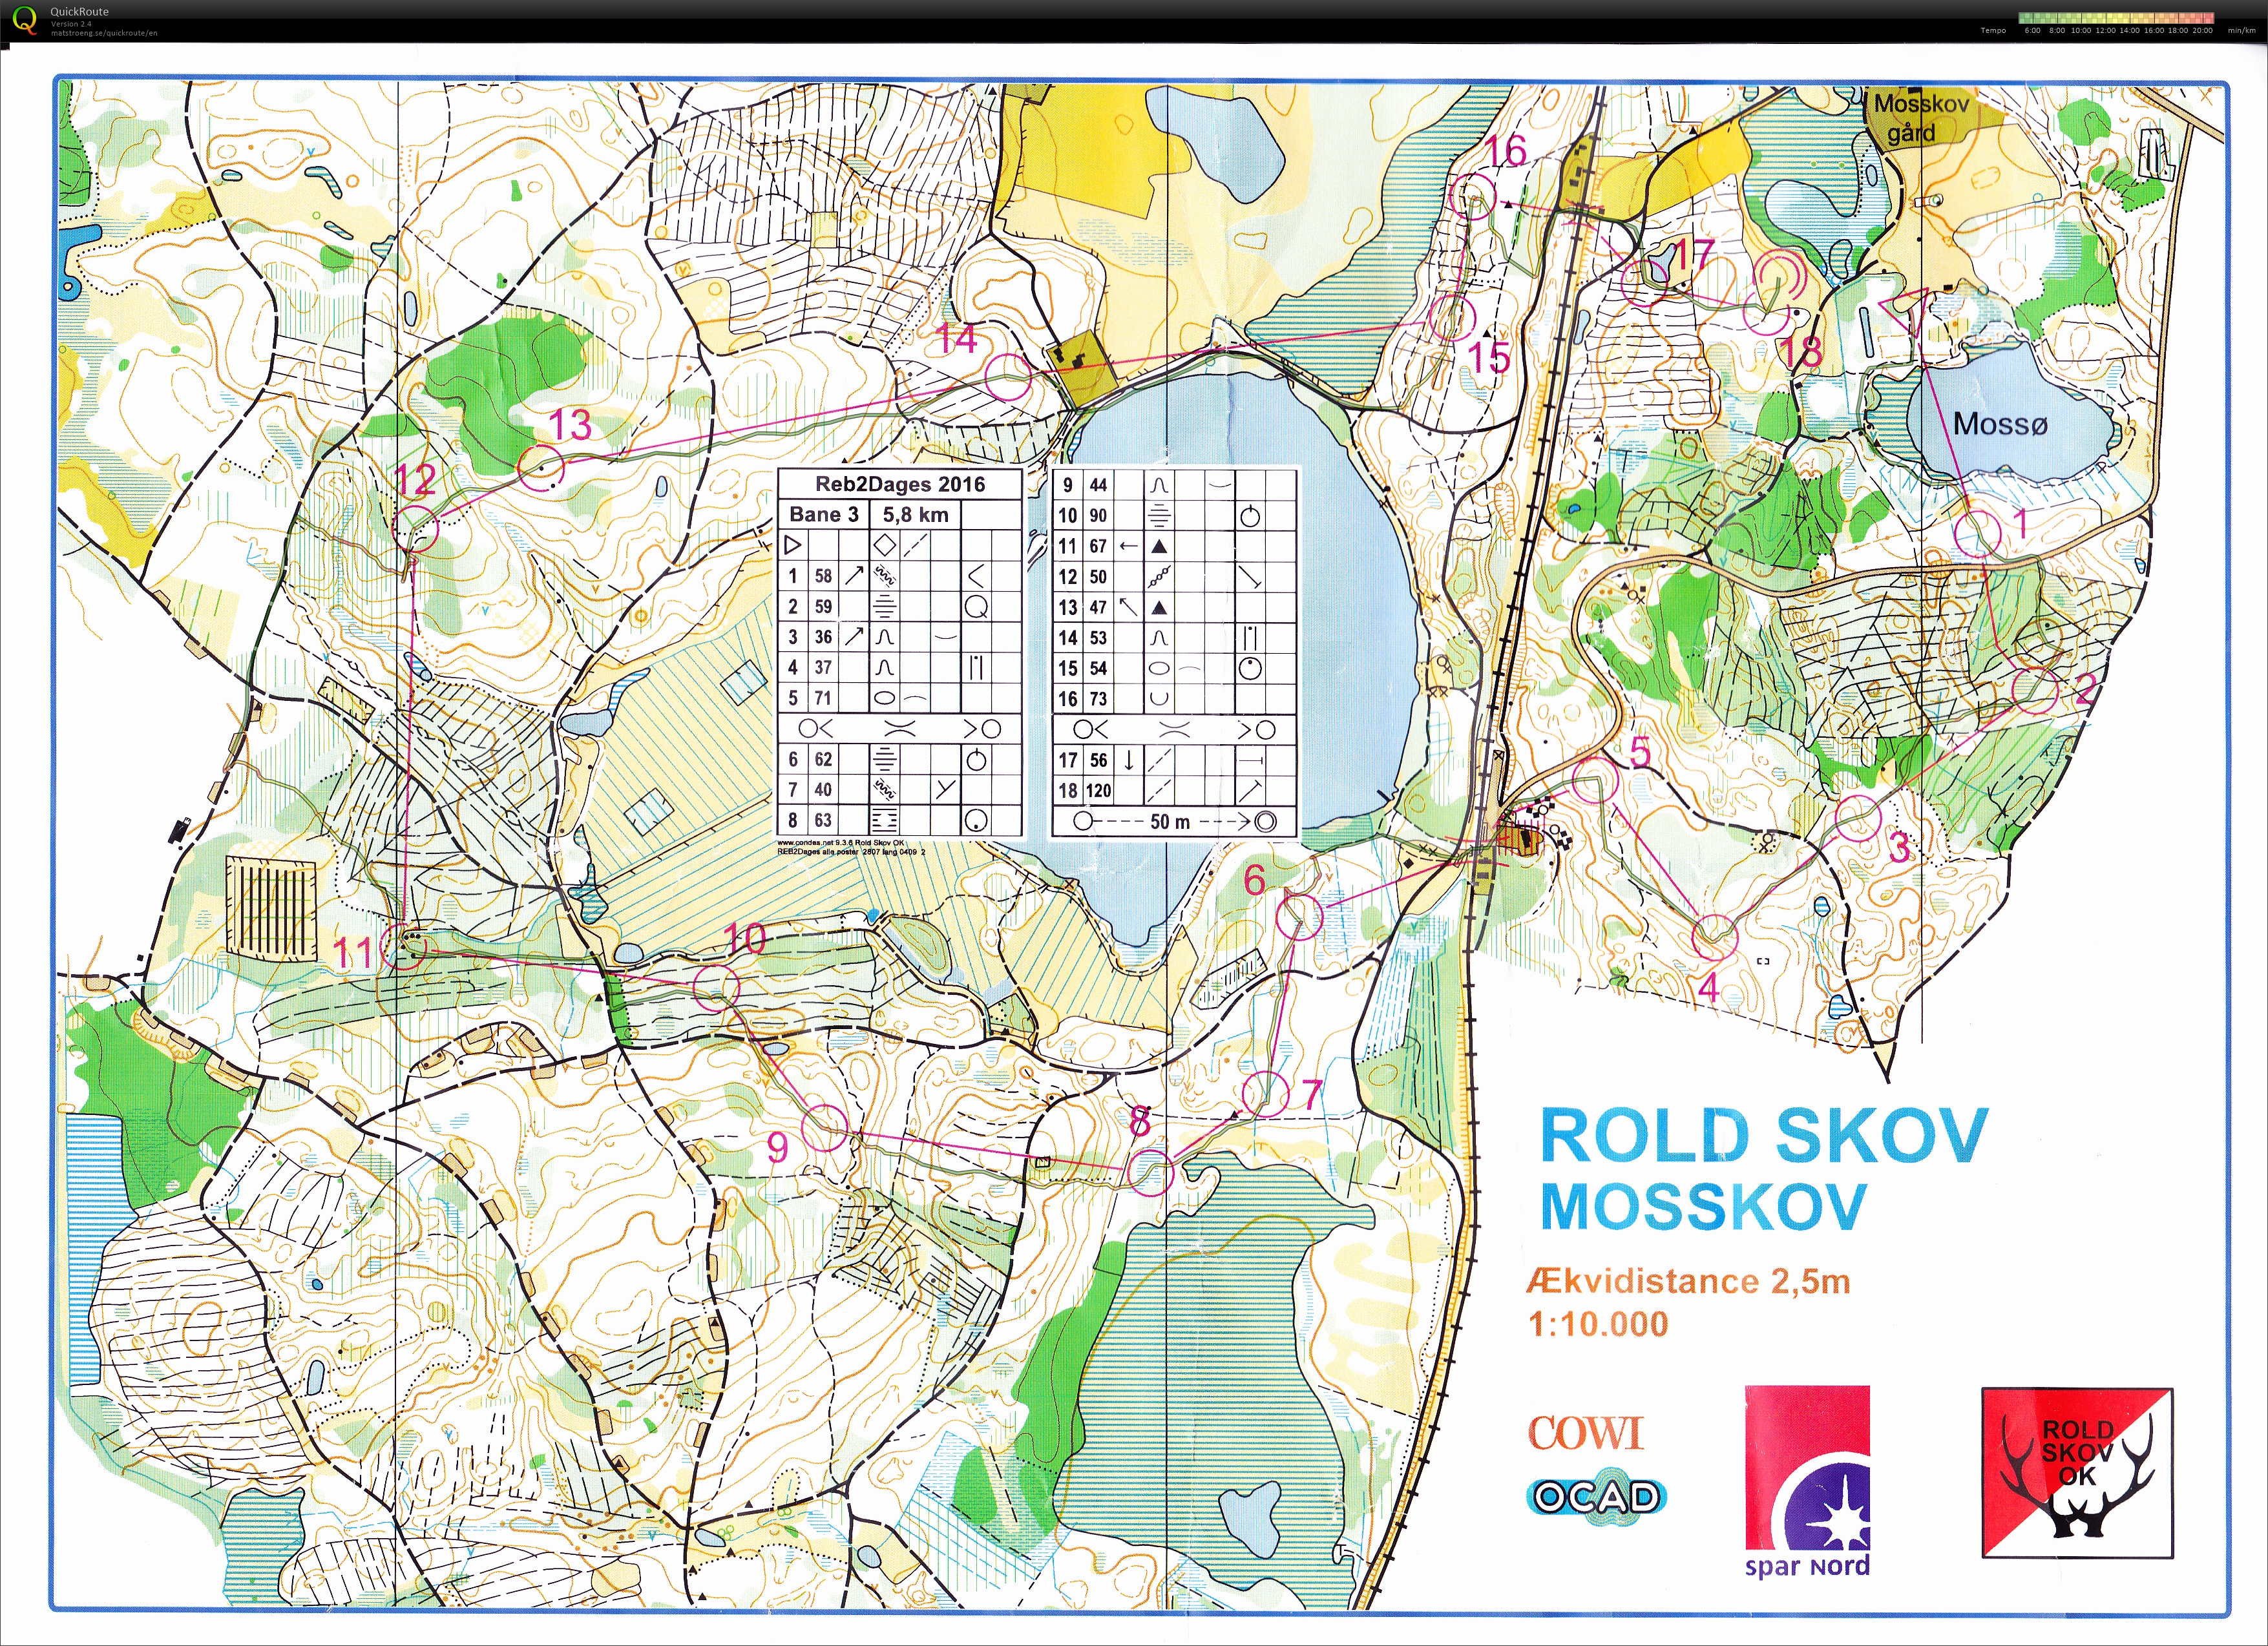 Mosskov Rold div. match (2016-09-25)